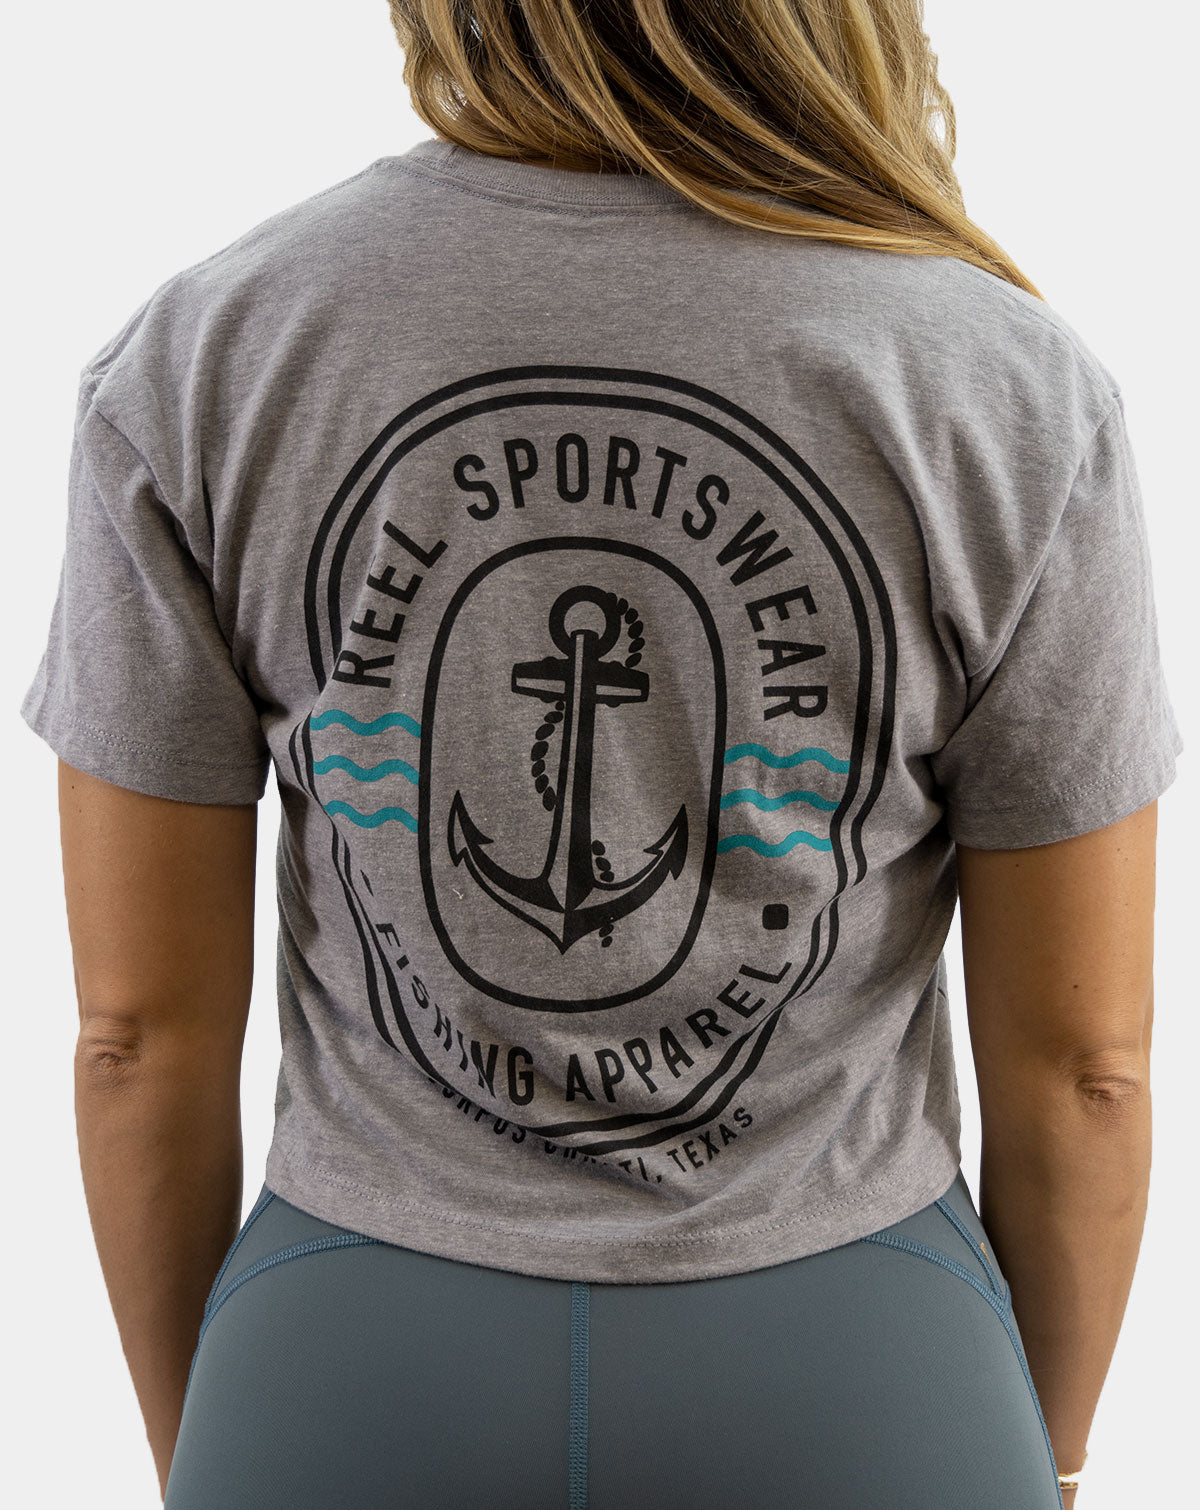 Women's Fishing Surf Crop Top - Boy's Club - Reel Sportswear